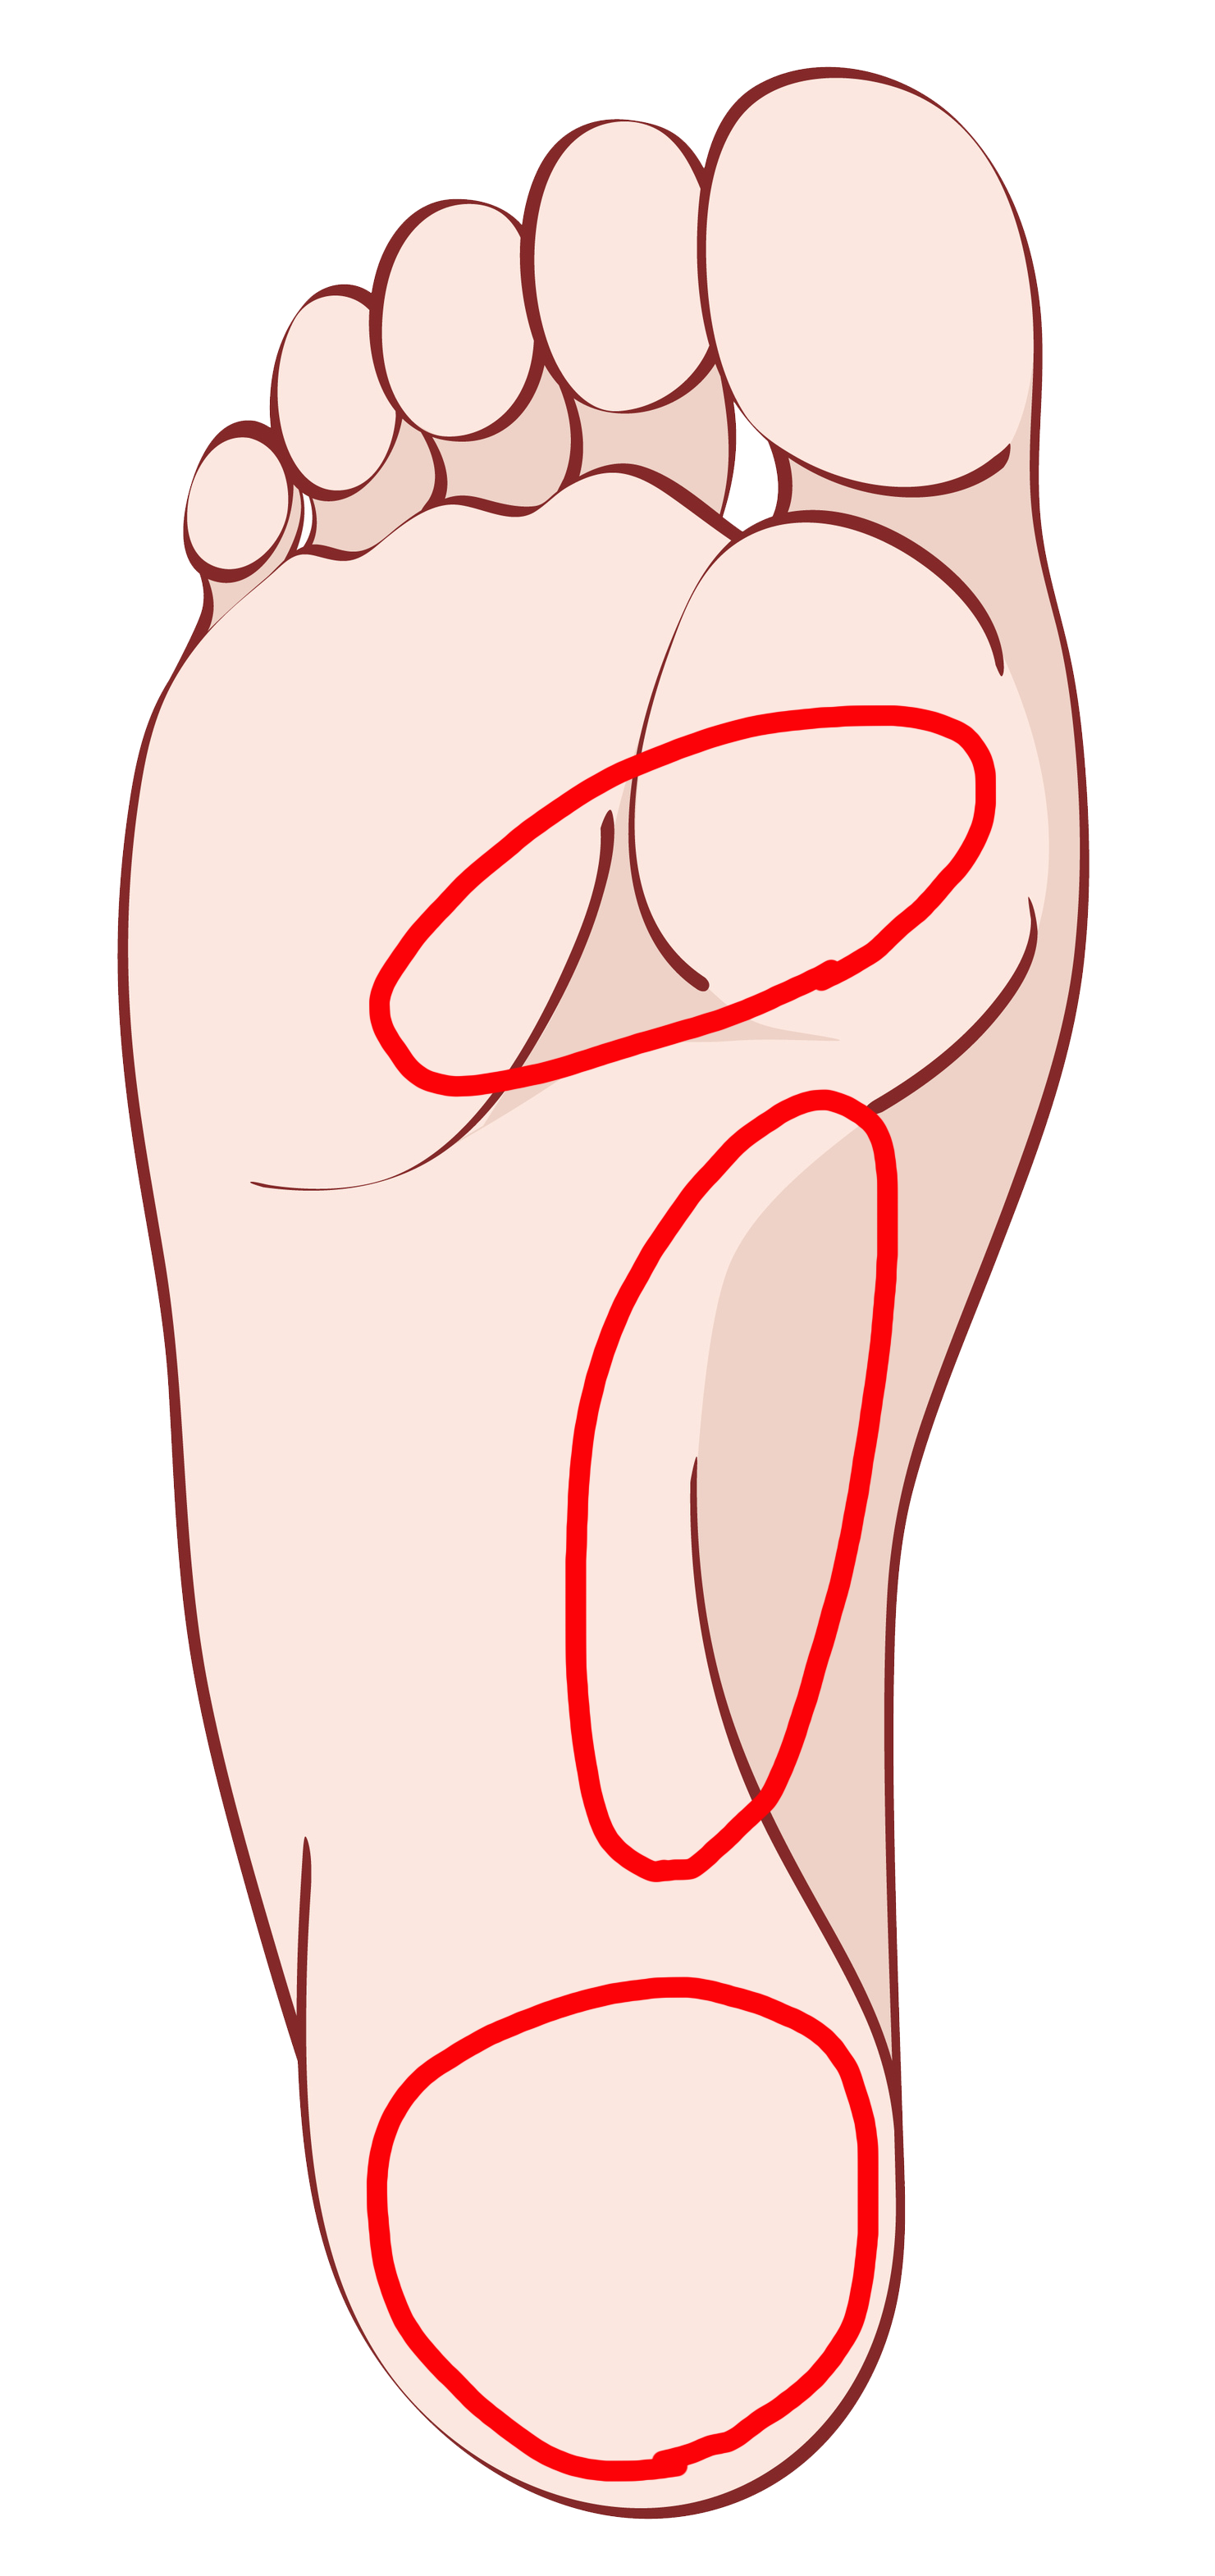 足底筋膜炎の痛みが生じる個所。
かかと部分が最も頻出する箇所となっている。